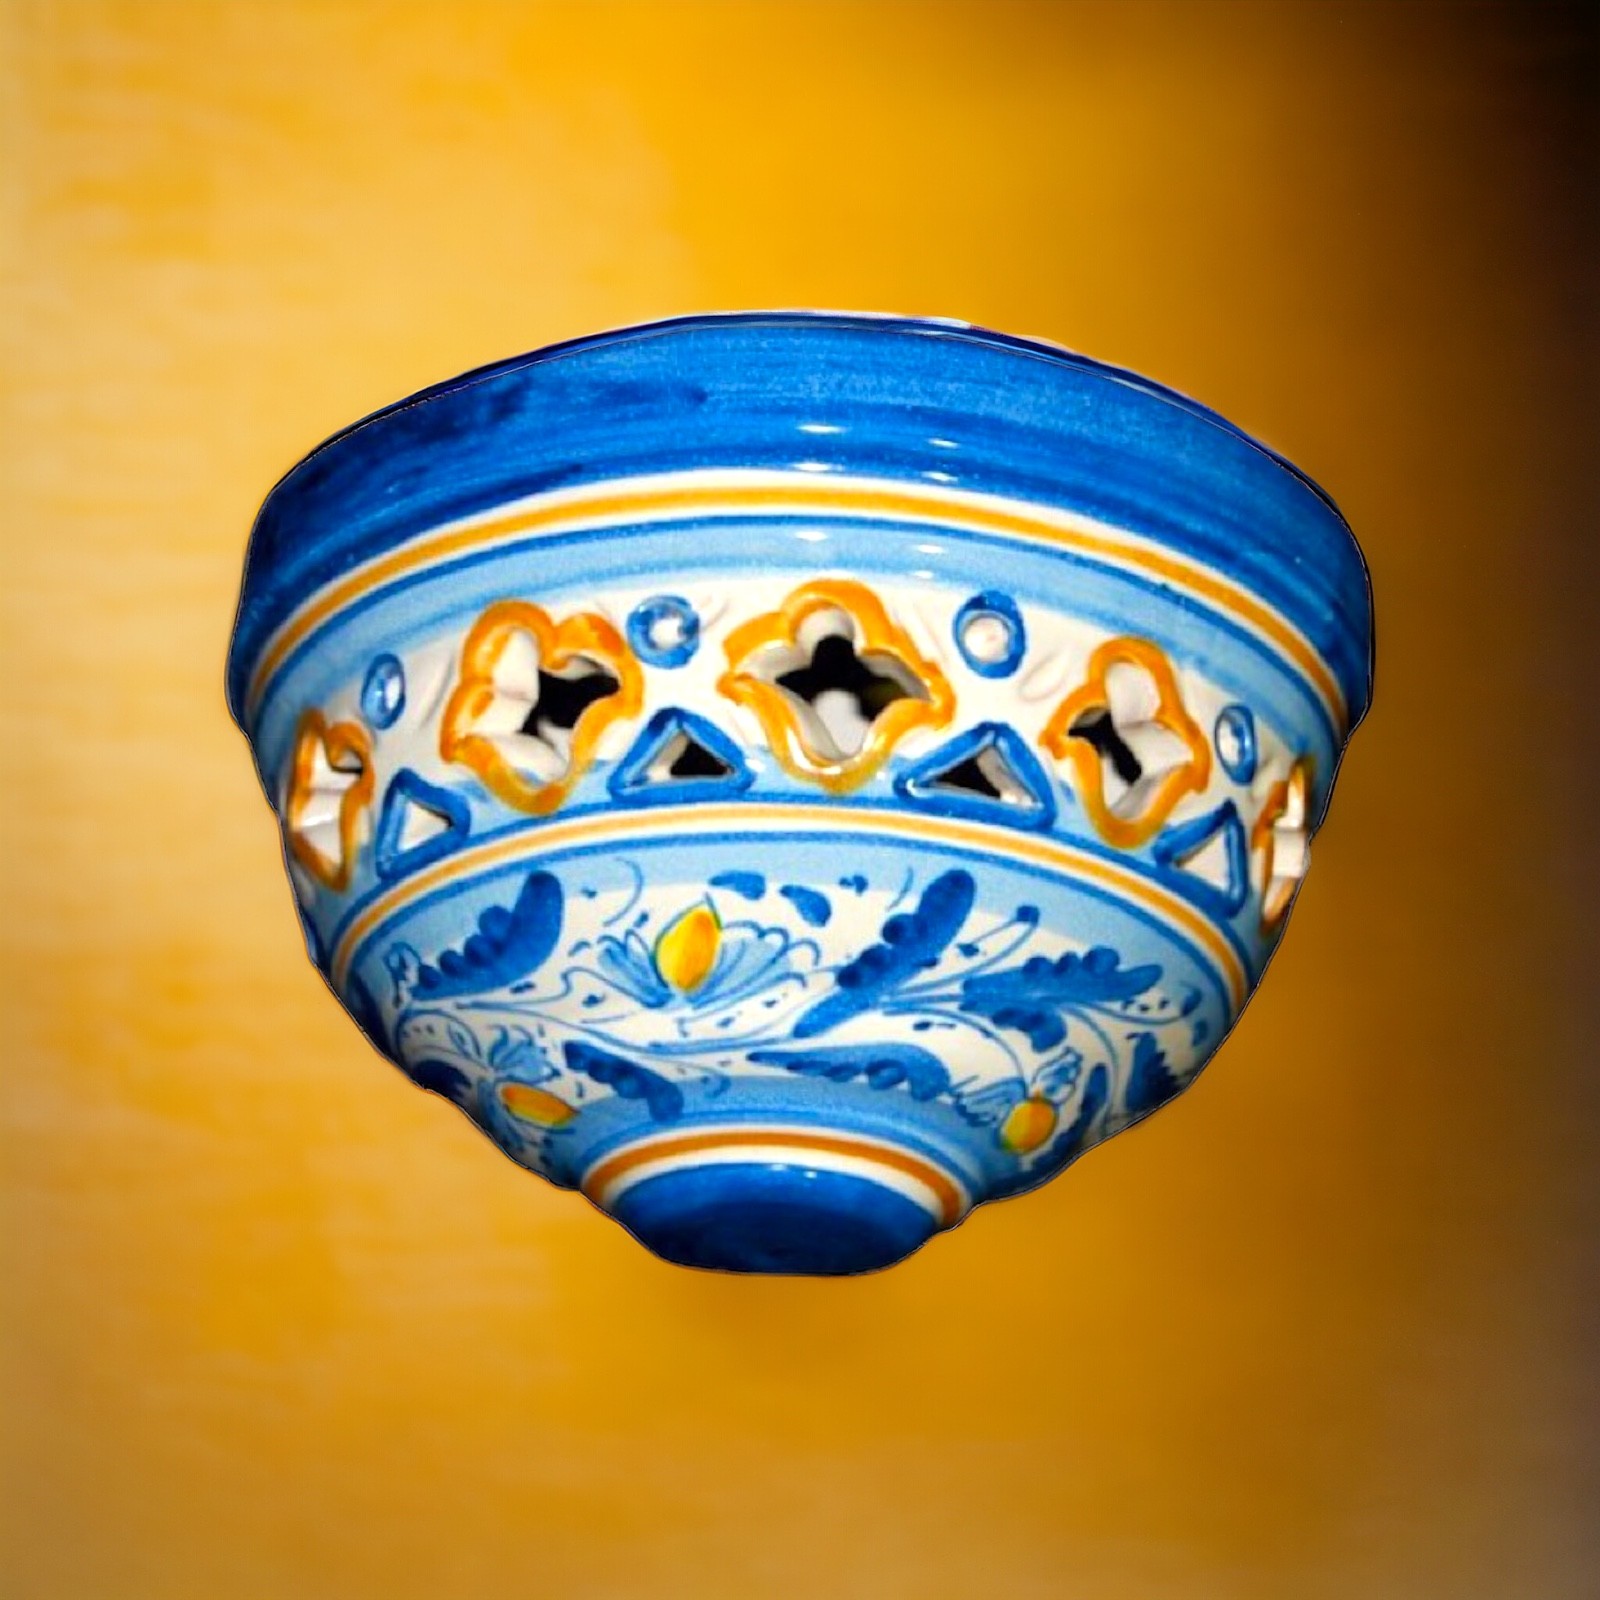 Gerla d.21 in ceramica di Caltagirone